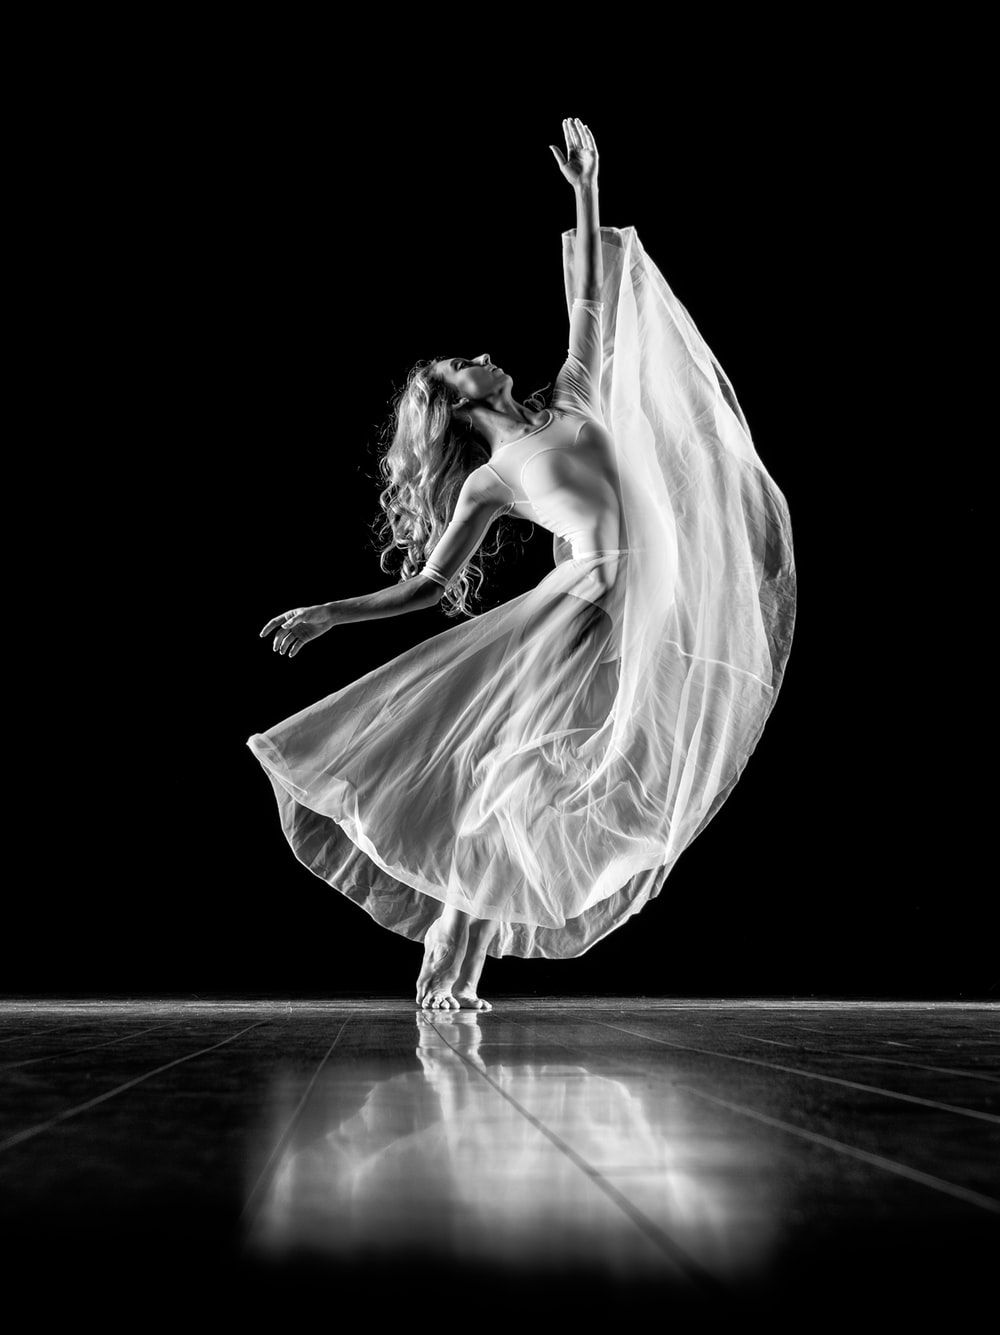 27+ imágenes de ballet | Descargar imágenes gratis